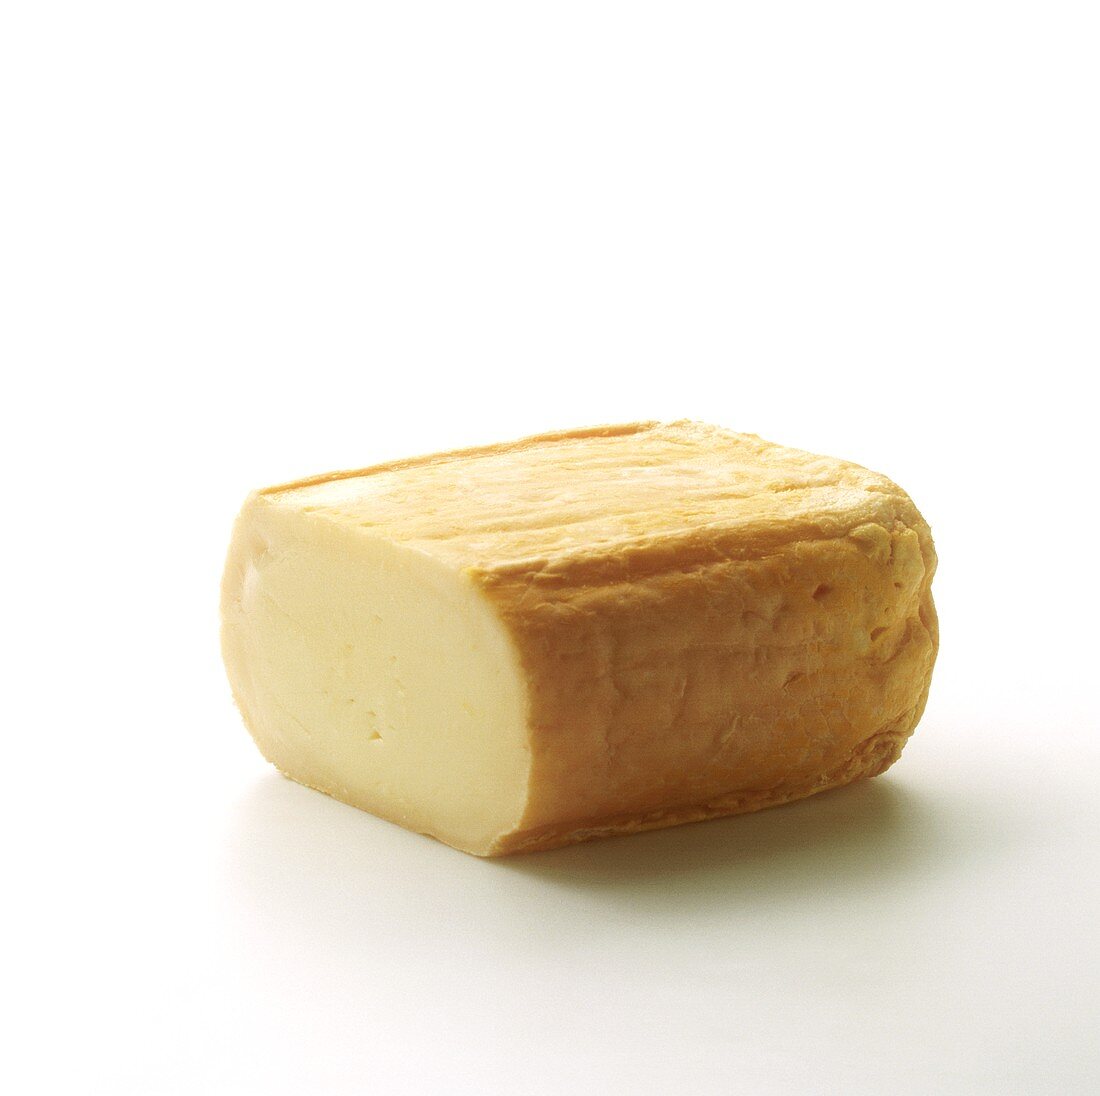 Limburger cheese, cut into